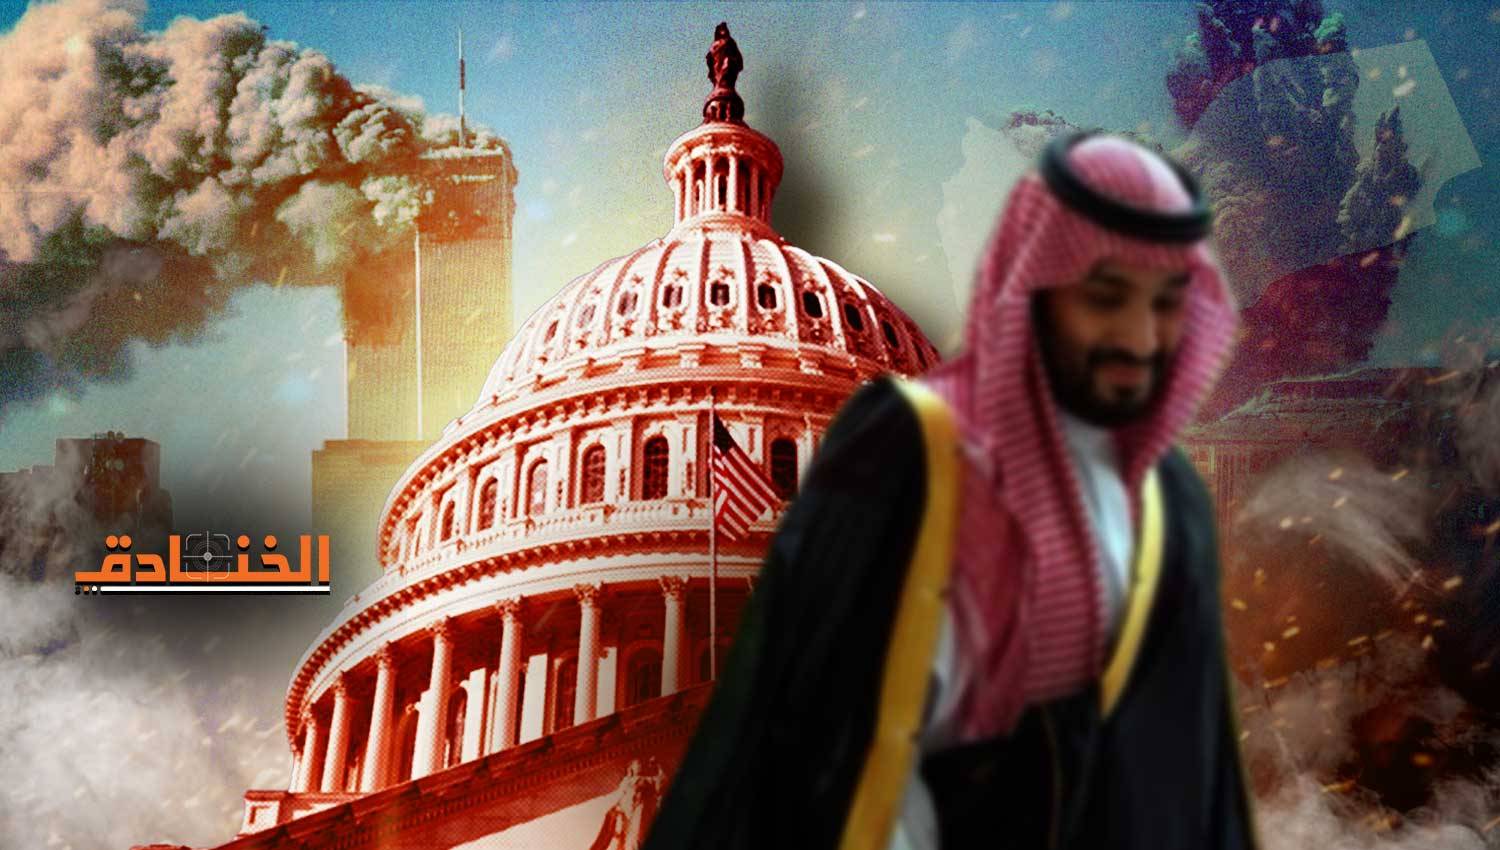 كيف وصلت الرياض إلى "حالة عدم اليقين" حيال واشنطن؟